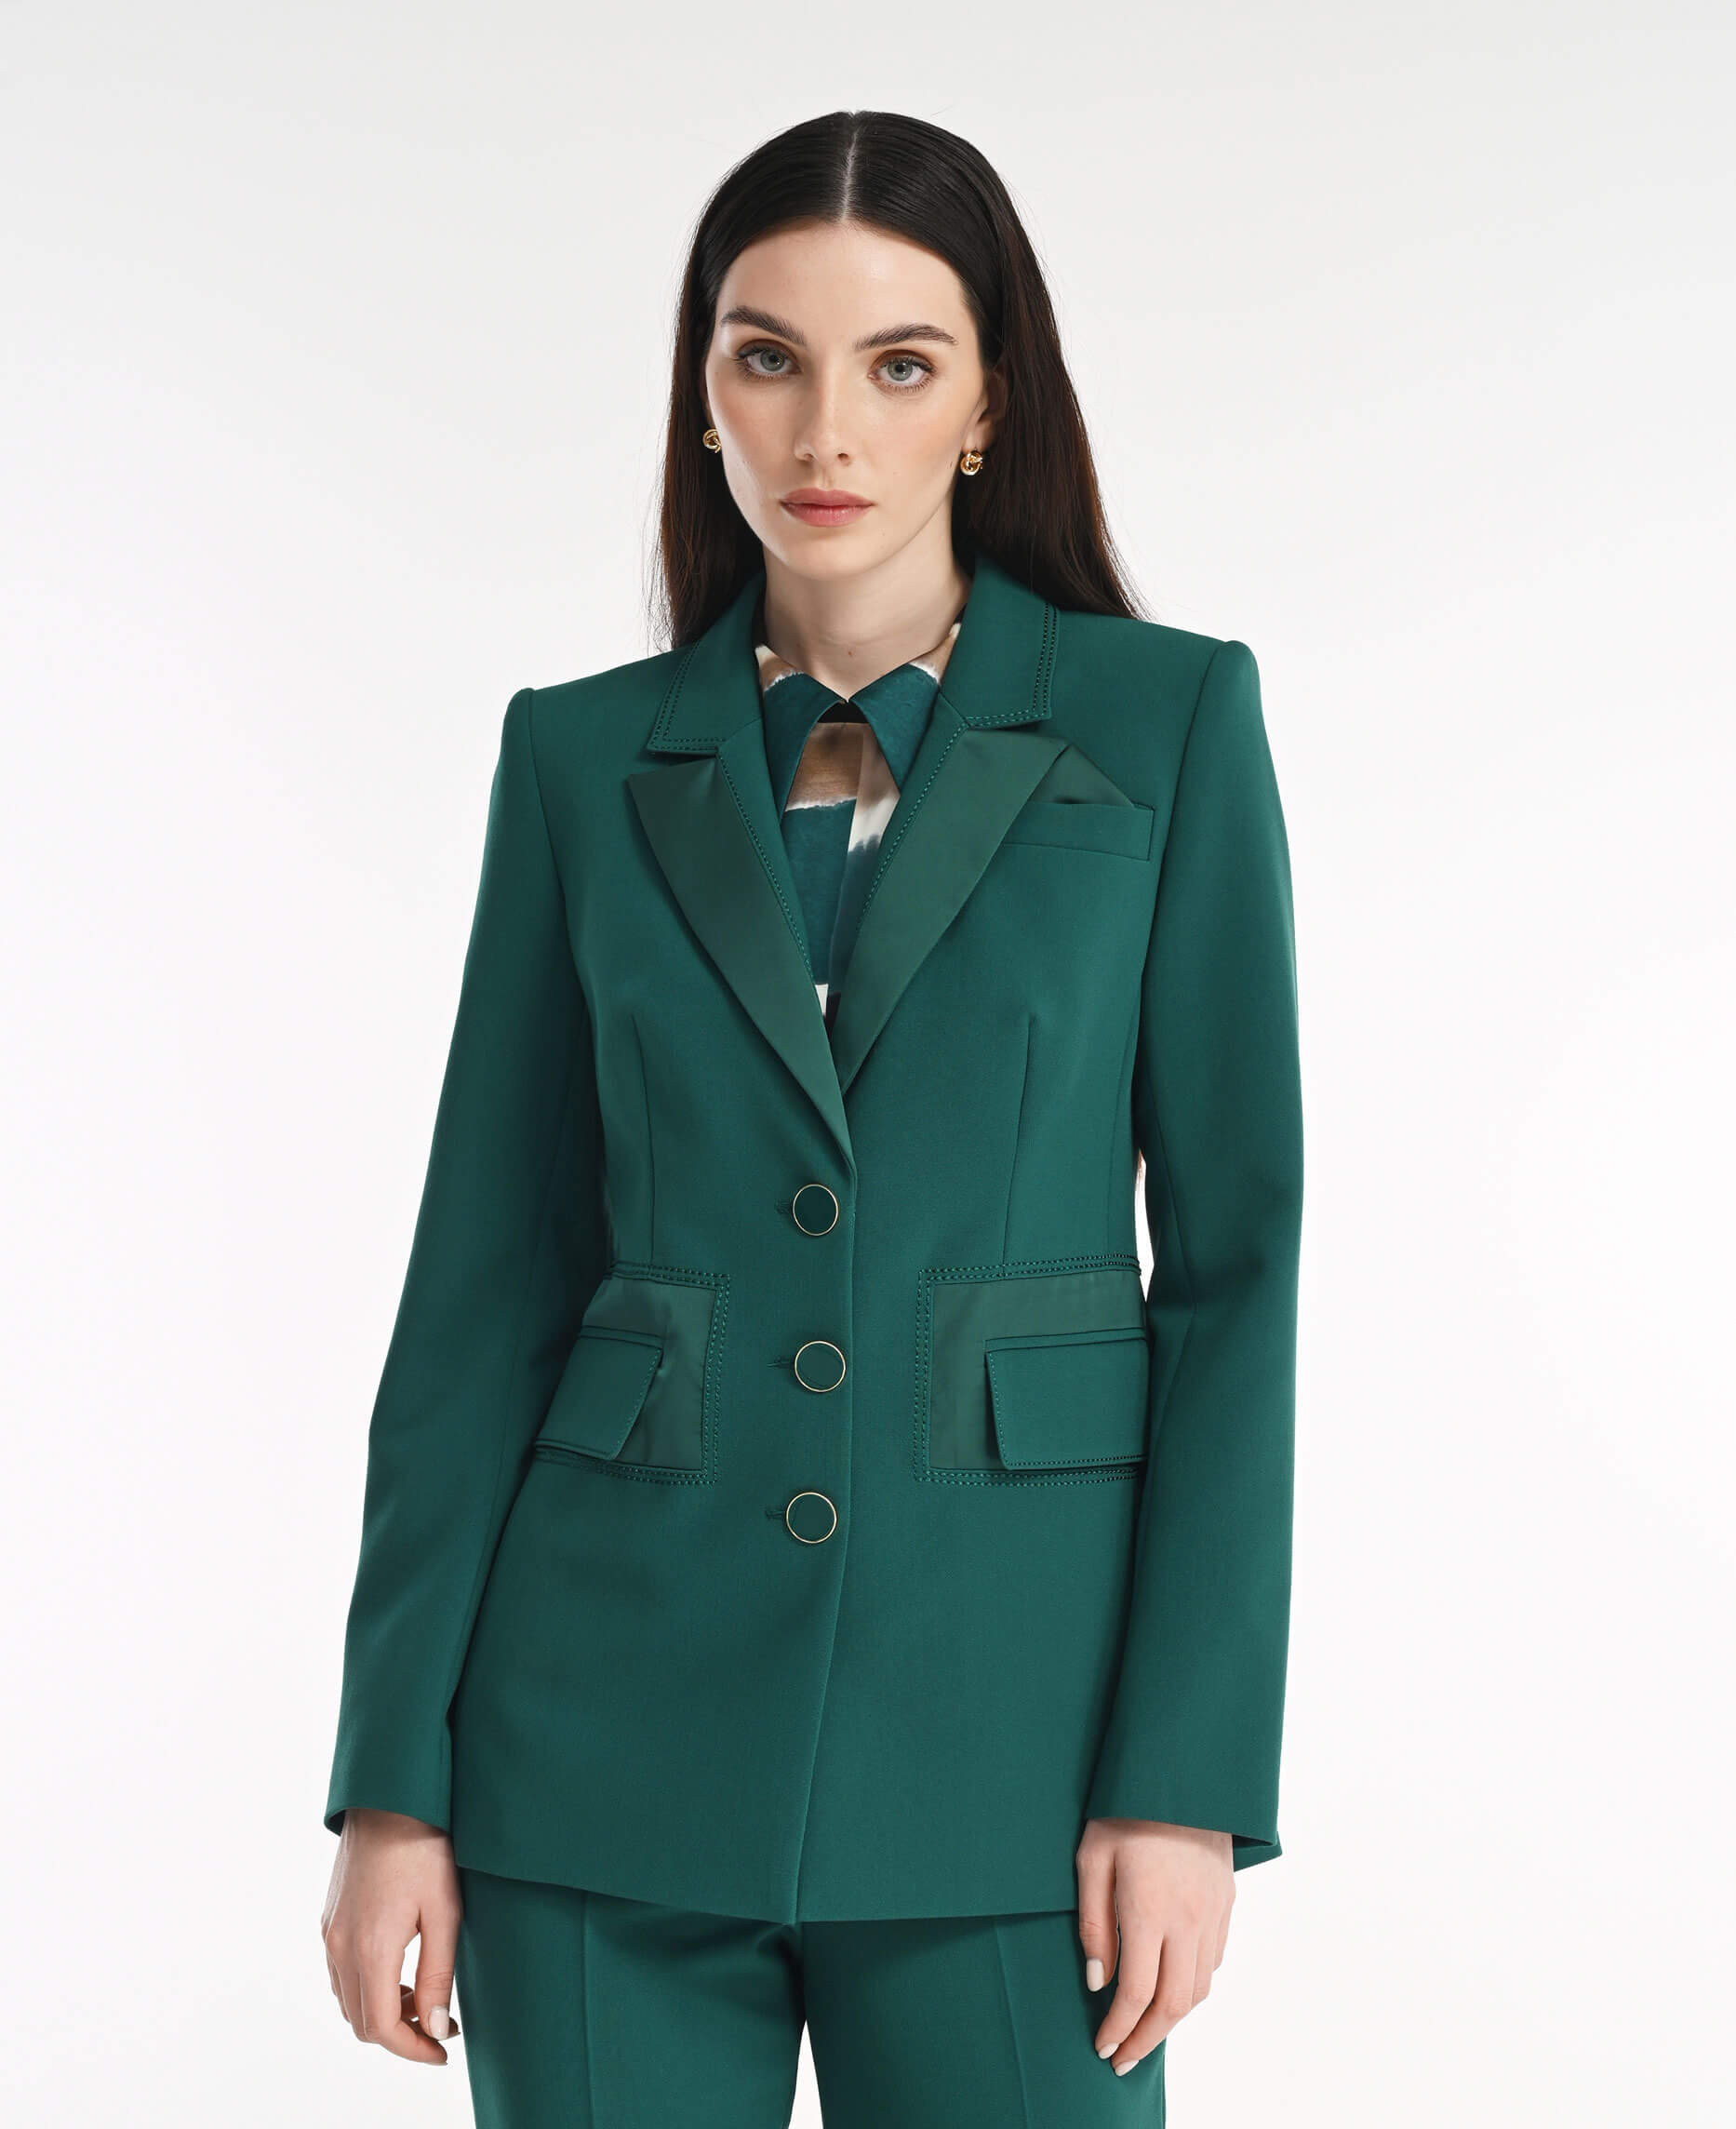 Пиджак с атласными деталями Цвет Зеленый